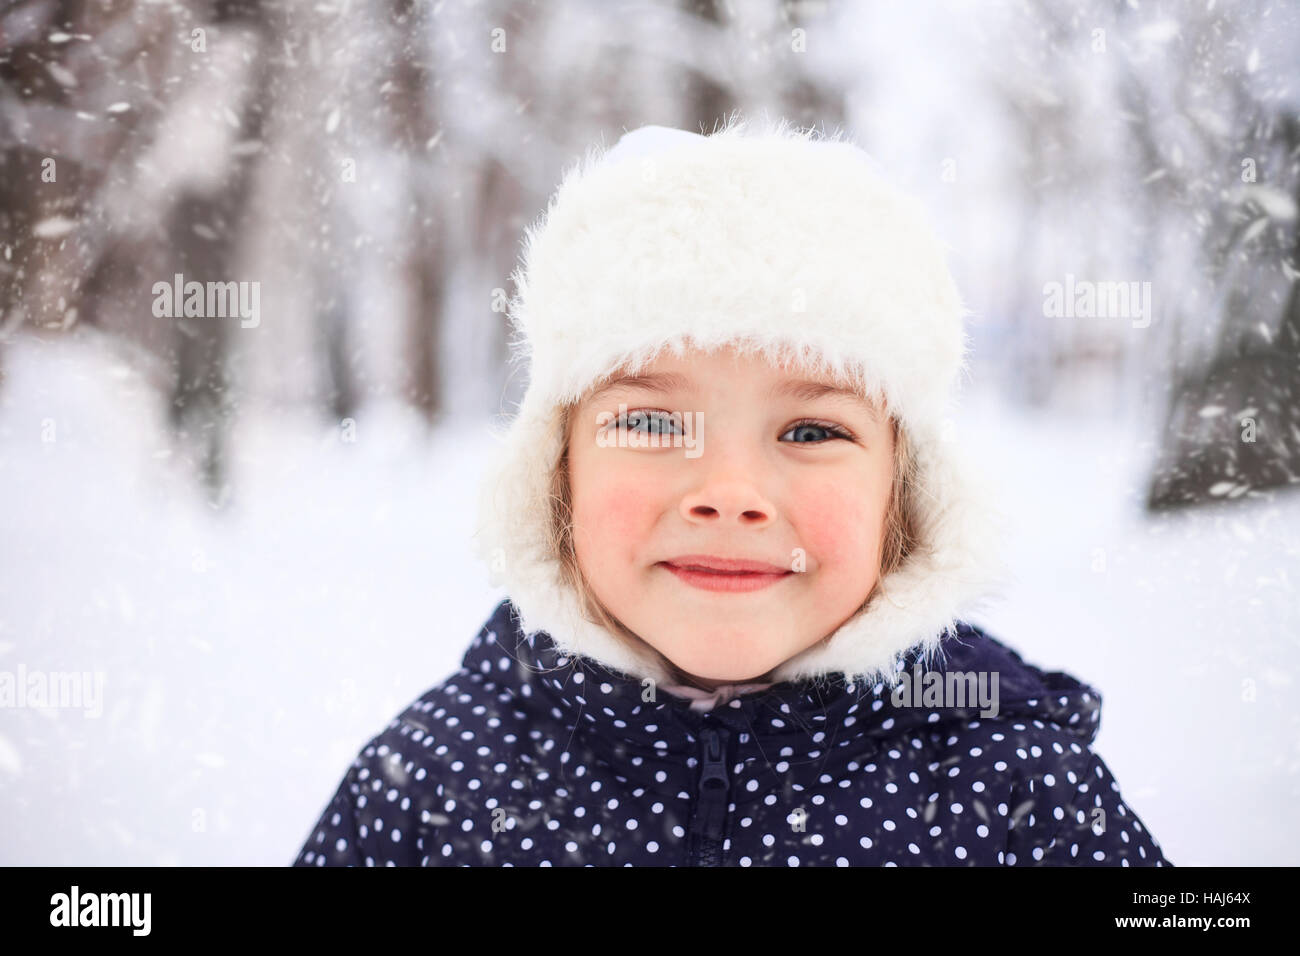 Porträt eines niedlichen kleinen Mädchens in einem schneereichen Winter-Wetter. Stockfoto